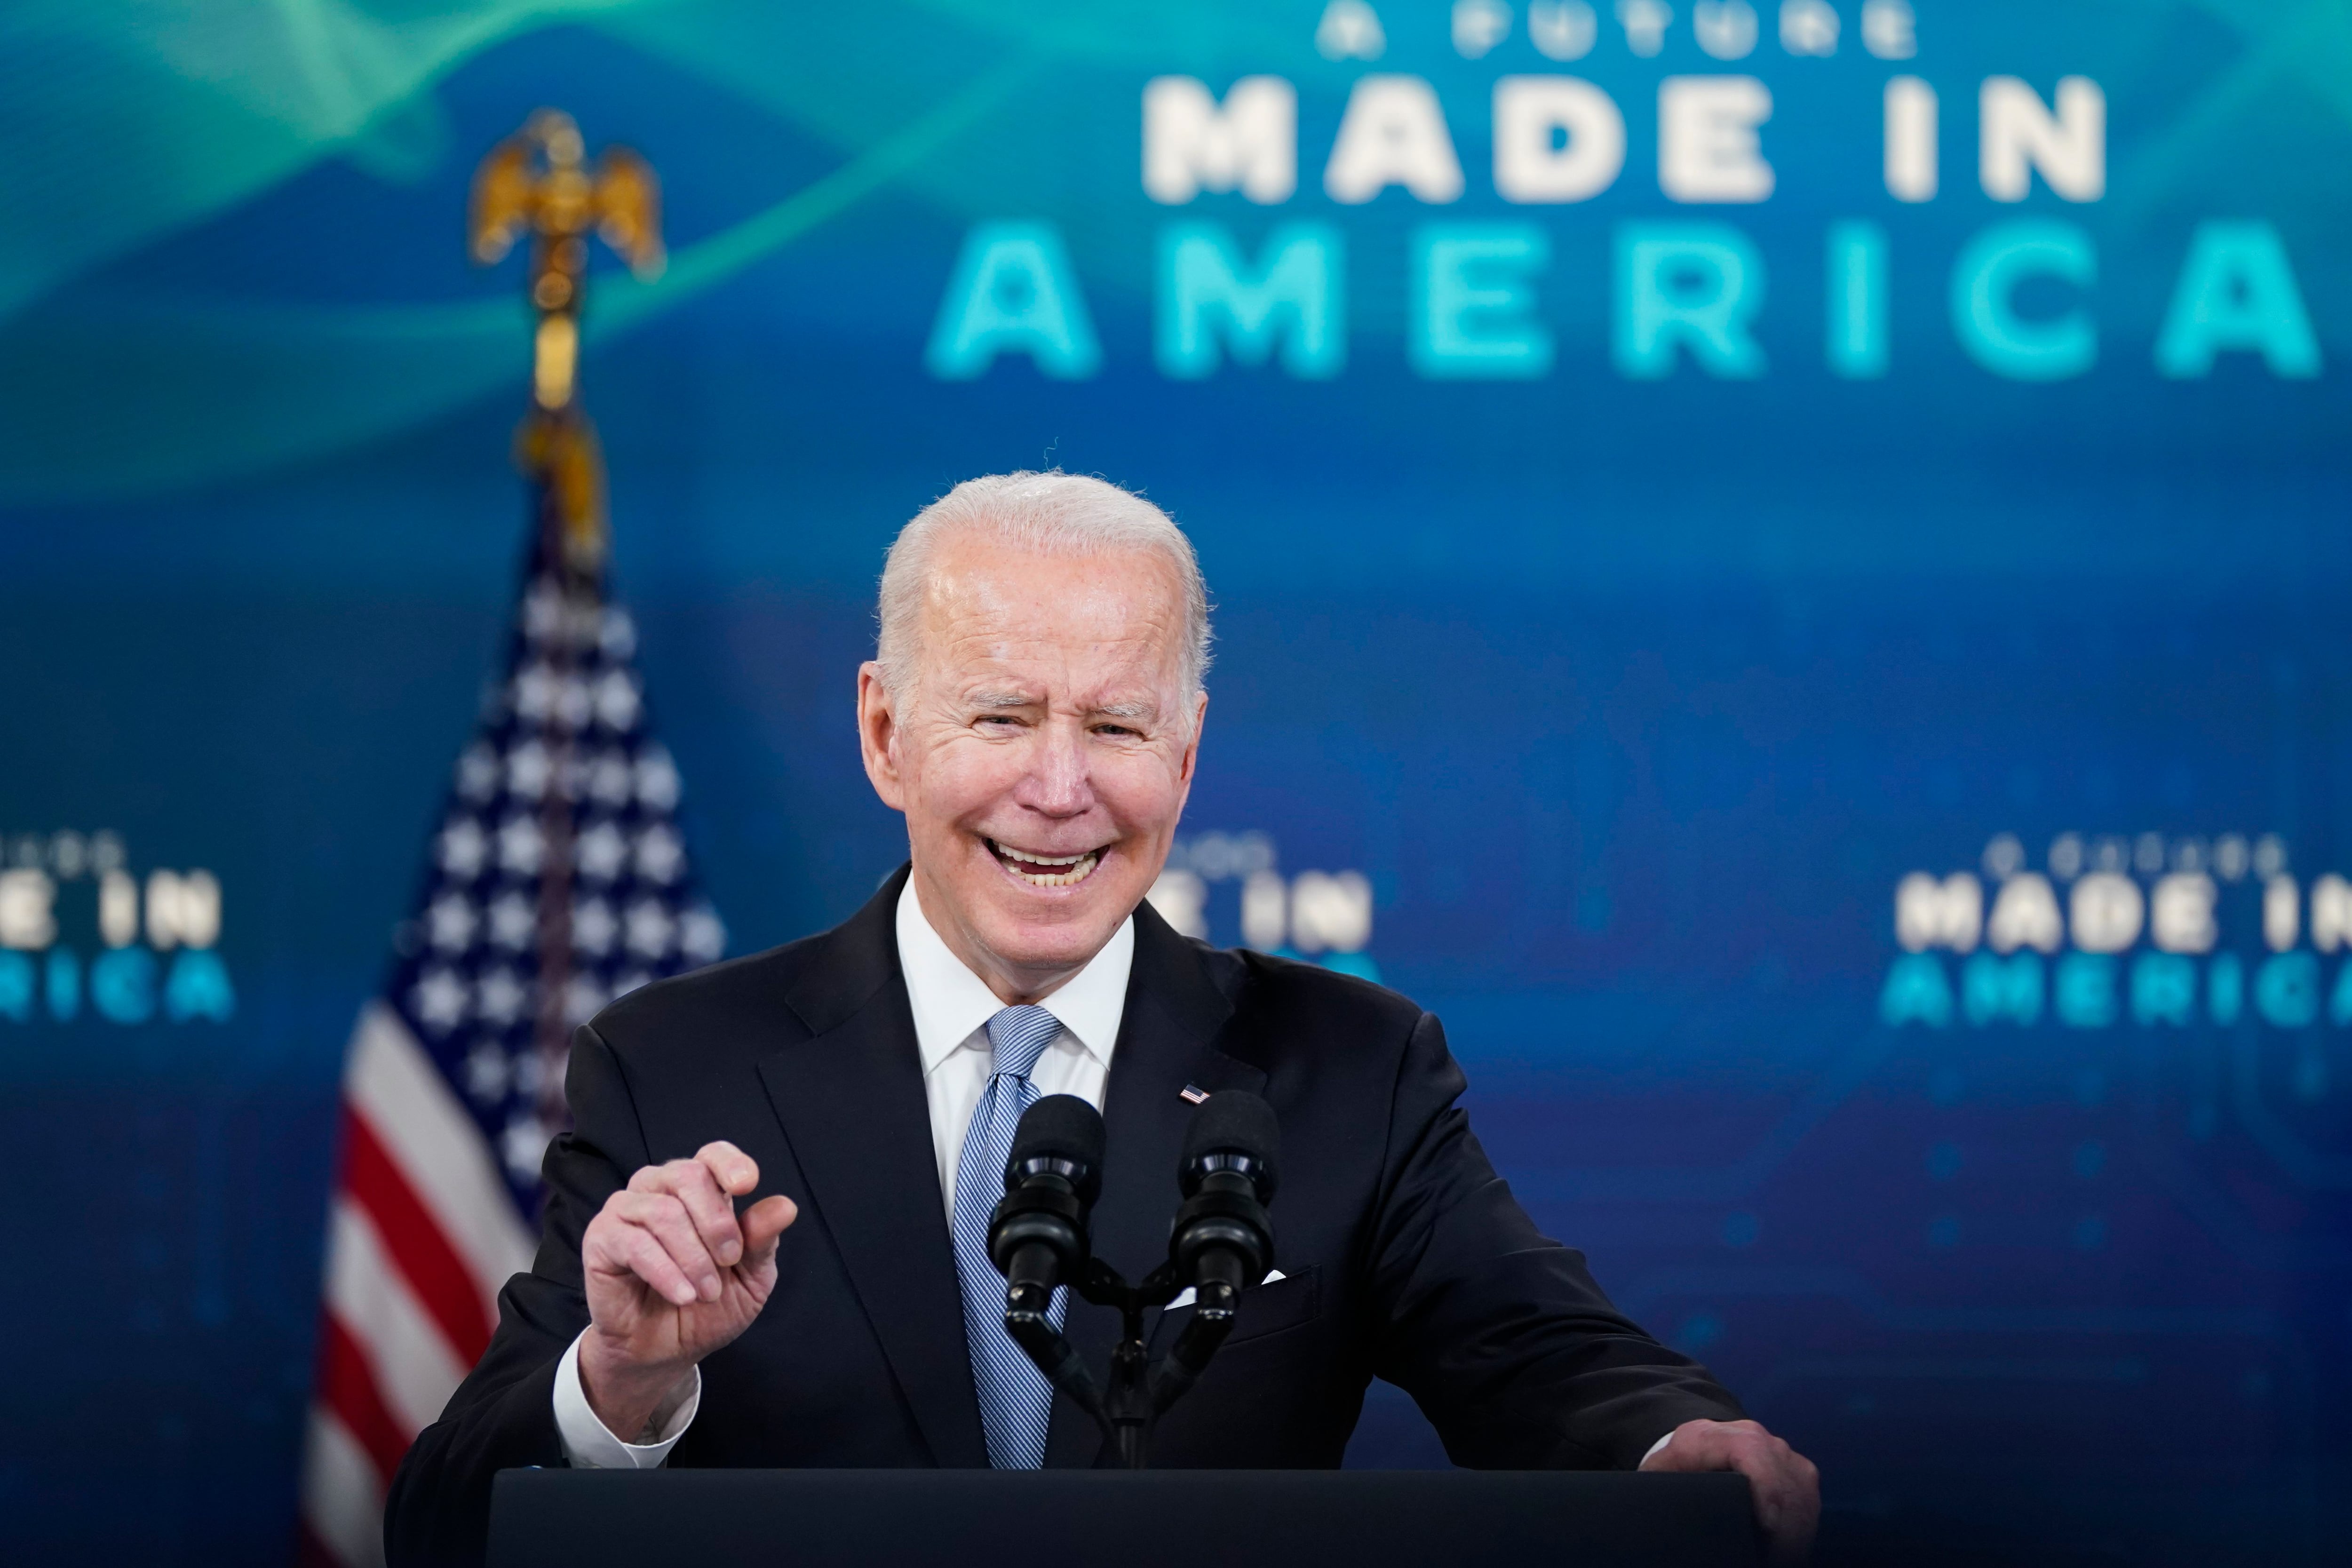 El presidente Joe Biden pronuncia un discurso sobre la industria, el 8 de febrero de 2022 en la Casa Blanca.